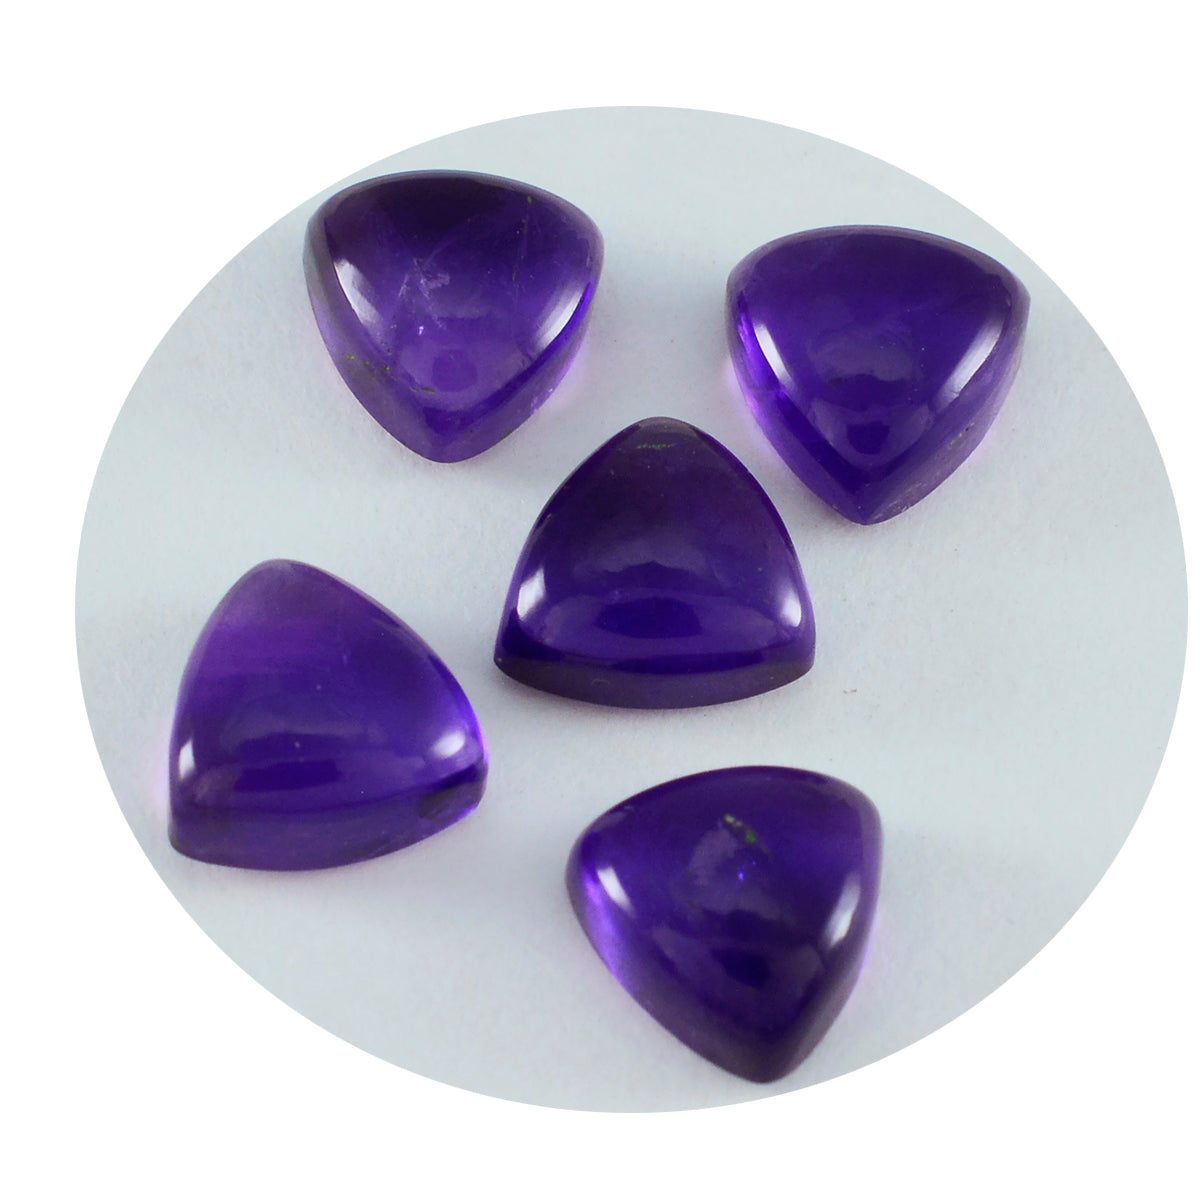 Riyogems 1PC Purple Amethyst Cabochon 6x6 mm Trillion Shape fantastic Quality Loose Gems